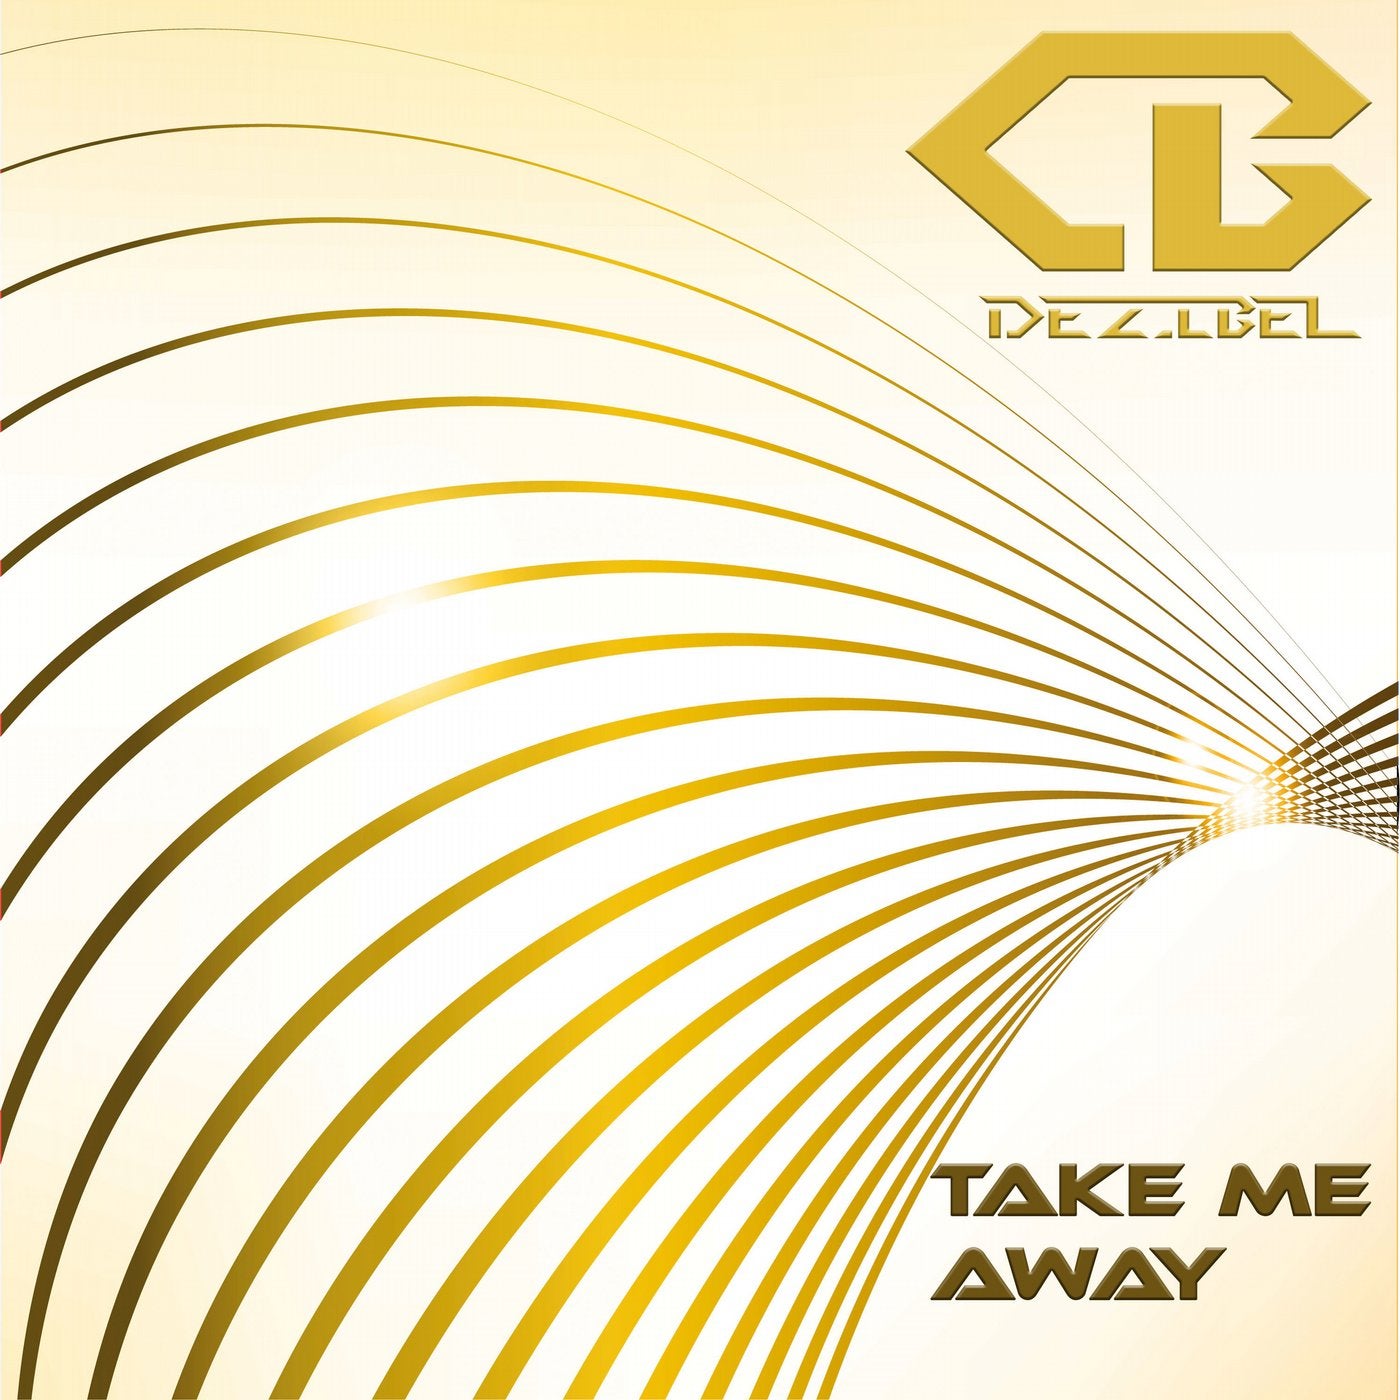 ACRAZE - take me away (Extended Mix). Dezibel x. Clubbed away